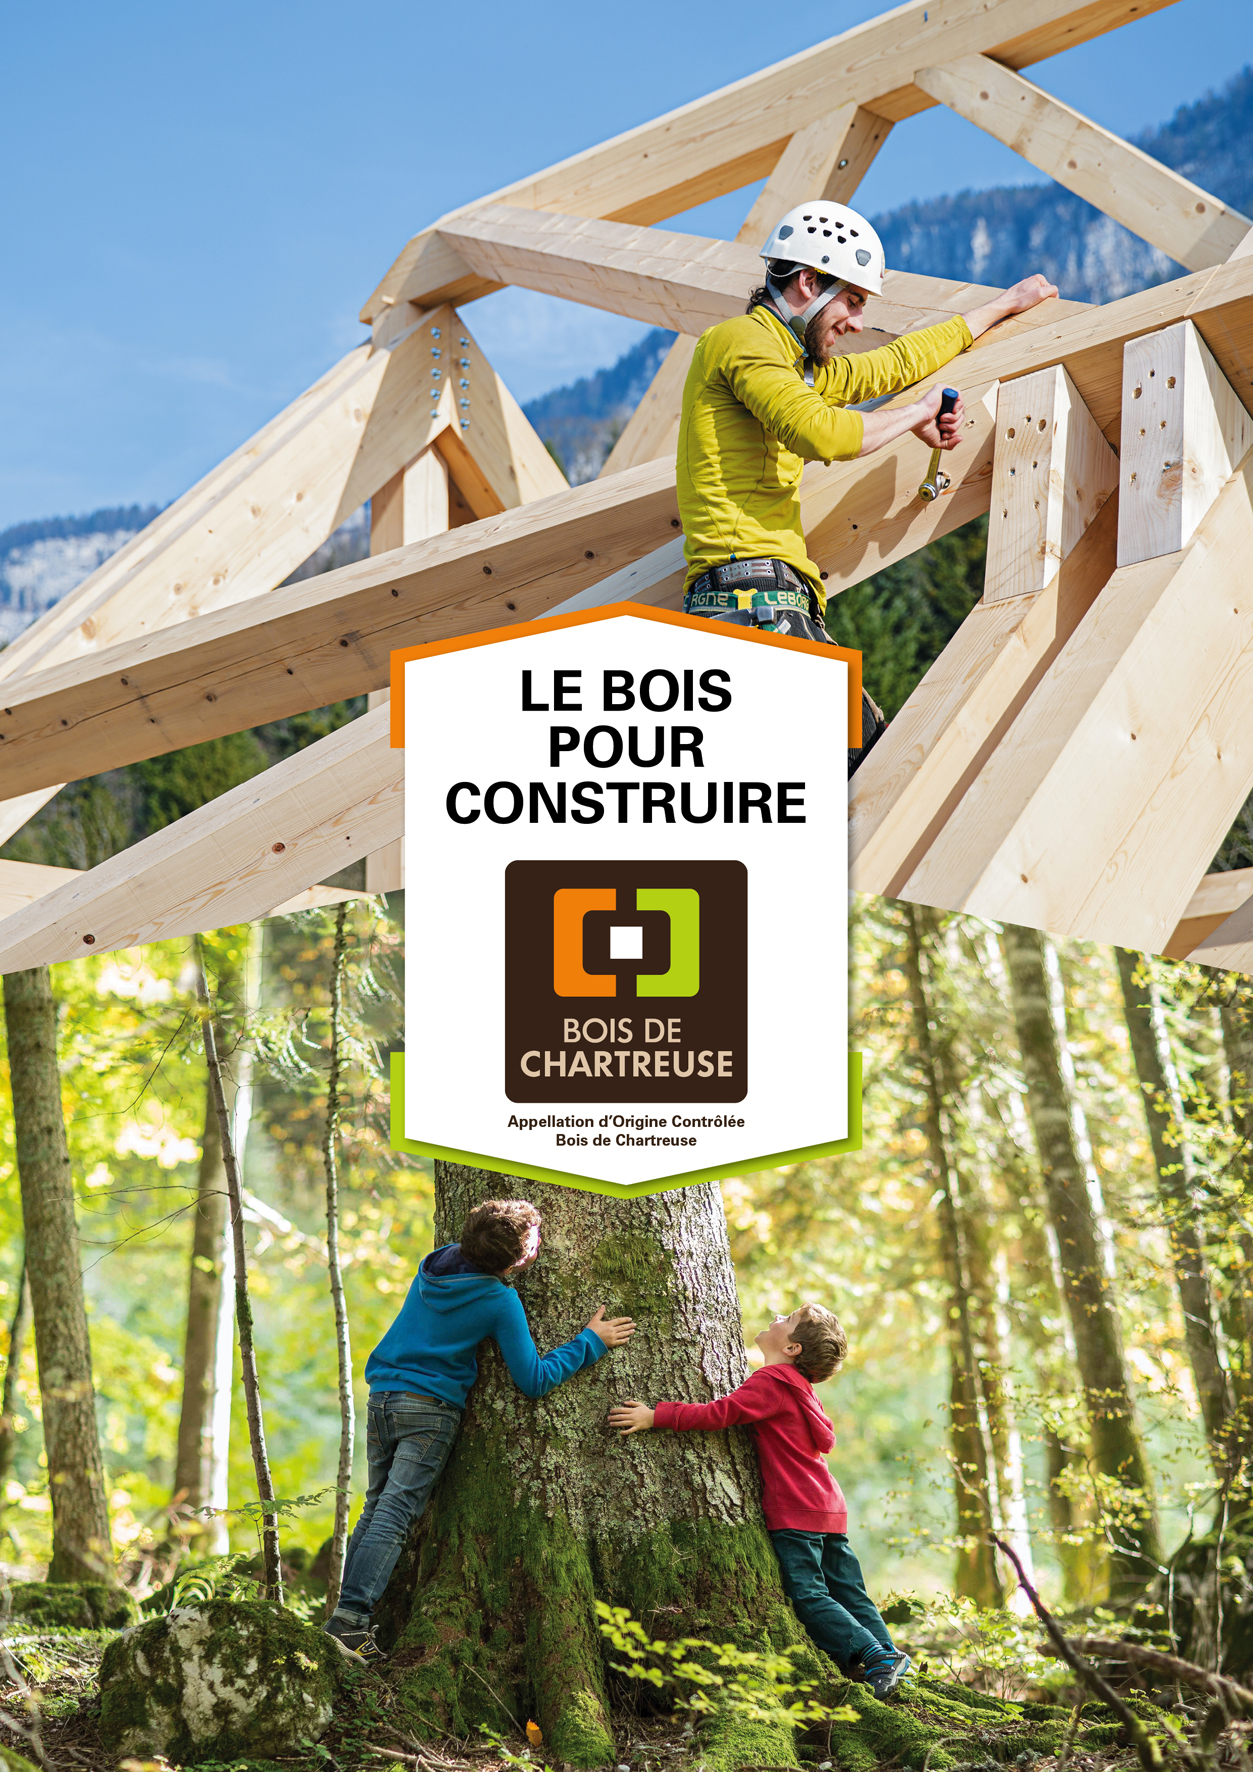 Le Bois de Chartreuse obtient la première AOC Bois en France : une première dans la filière bois !